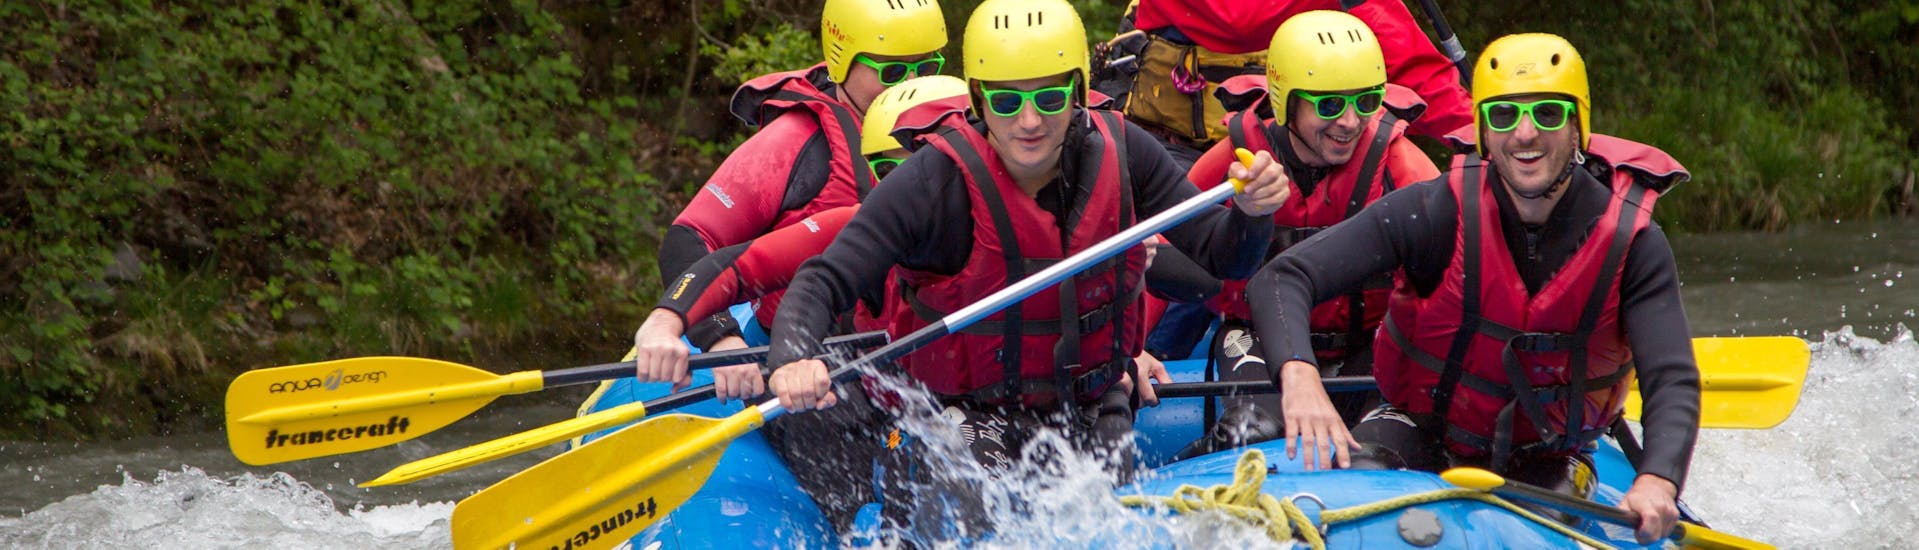 Un groupe d'amis s'amuse pendant sa descente en rafting sur l'Isère - Facile avec Franceraft.